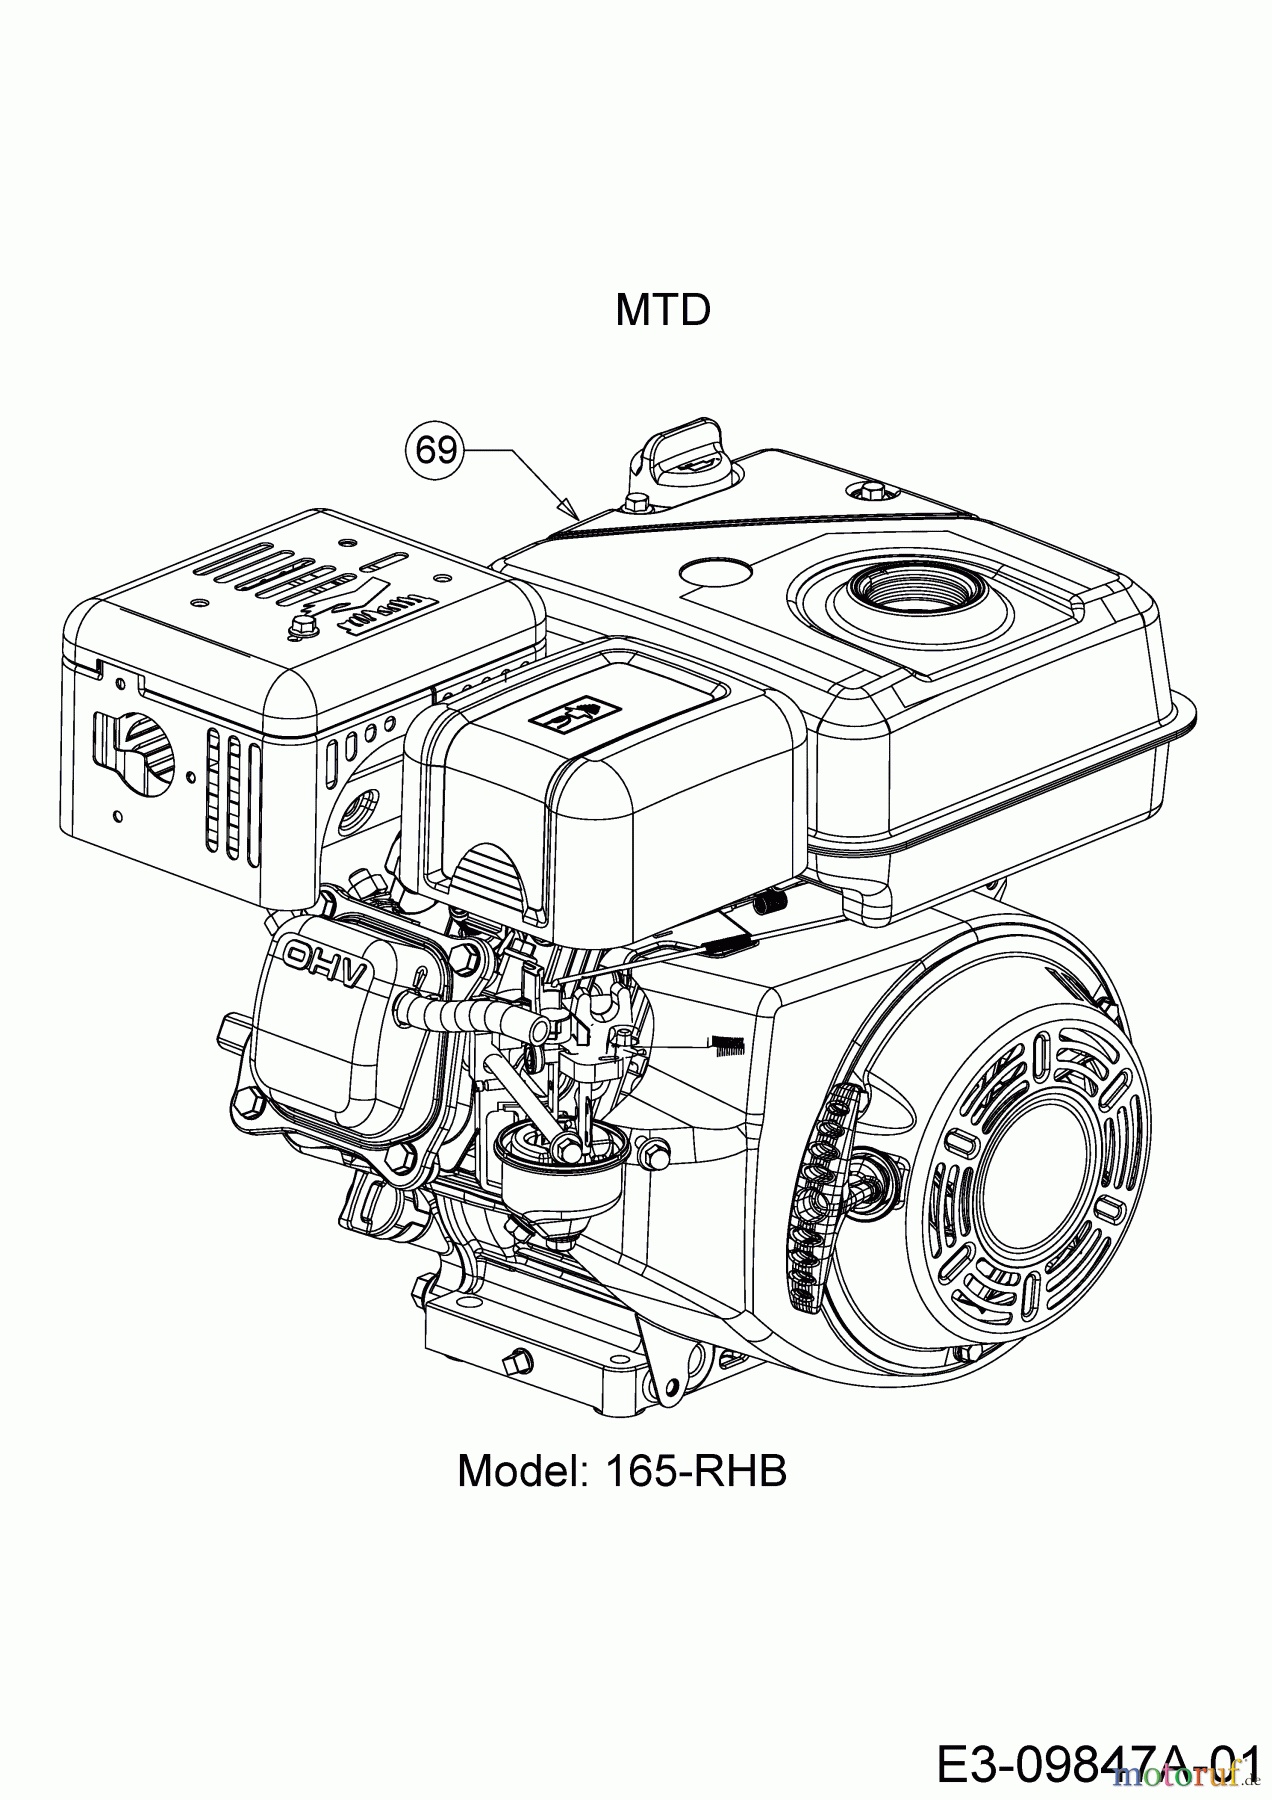  MTD Tillers T/380 M 21A-38MU678 (2020) Engine MTD